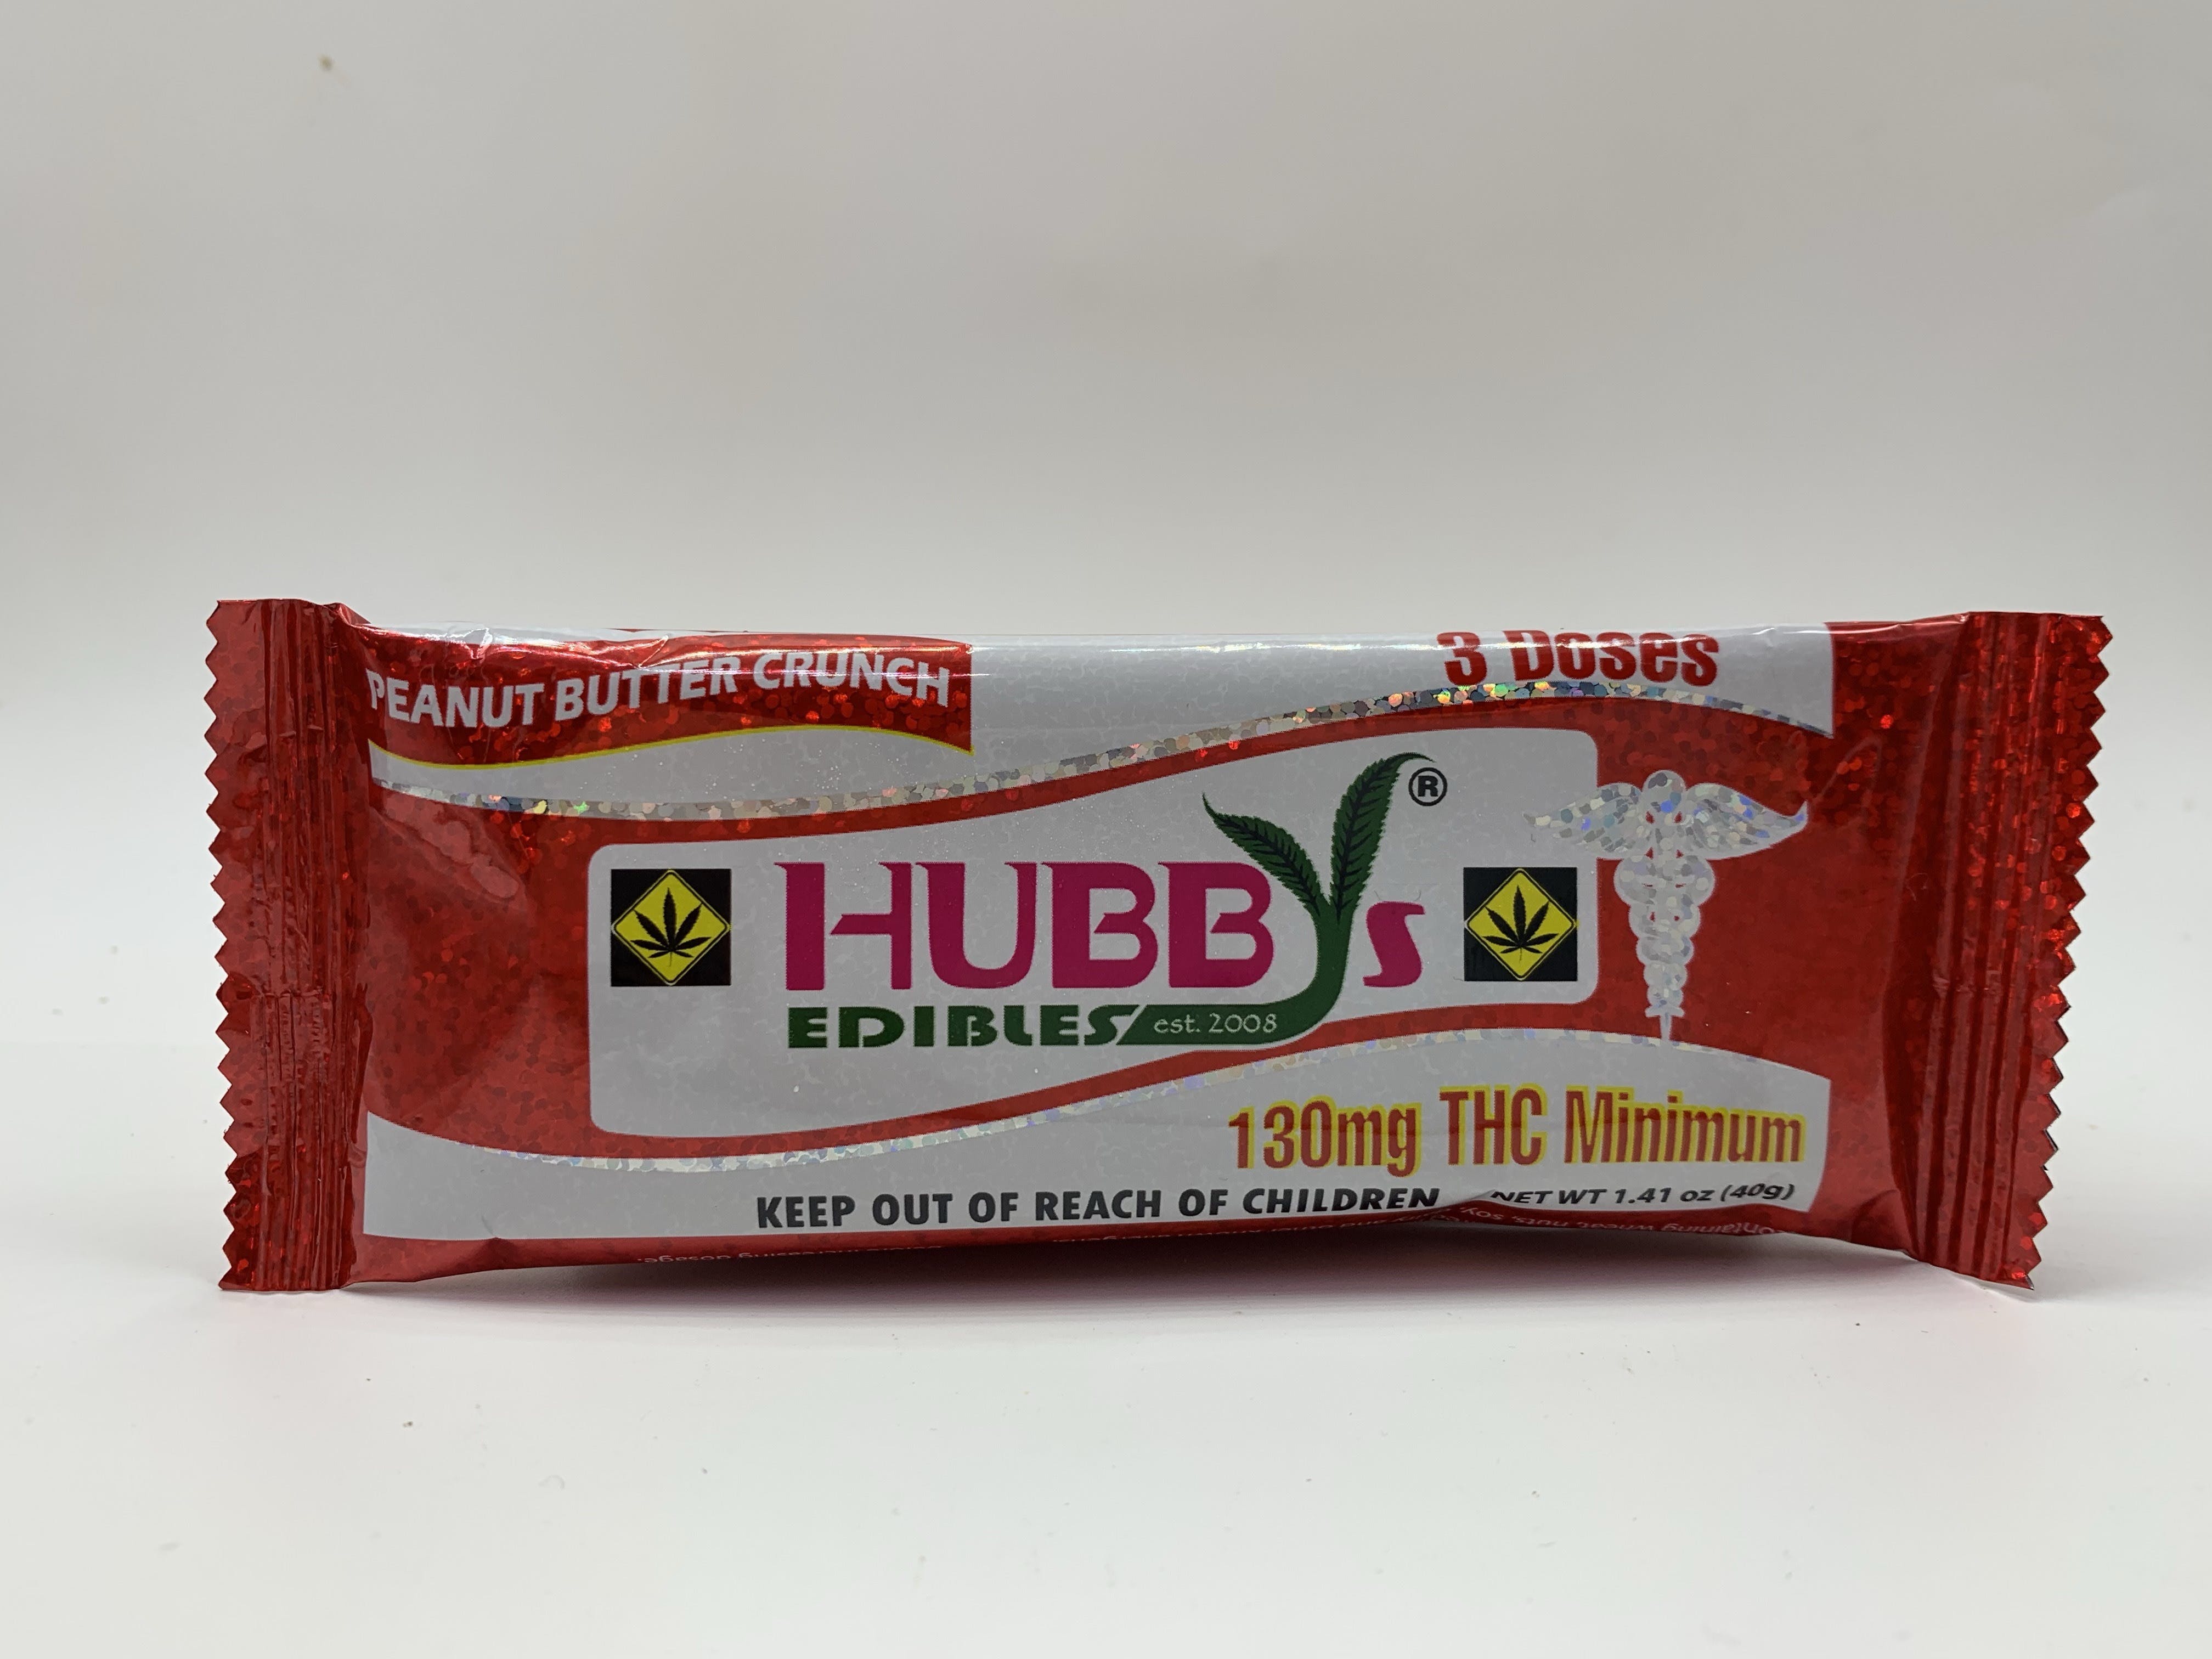 edible-hubbys-peanut-butter-crunch-bar